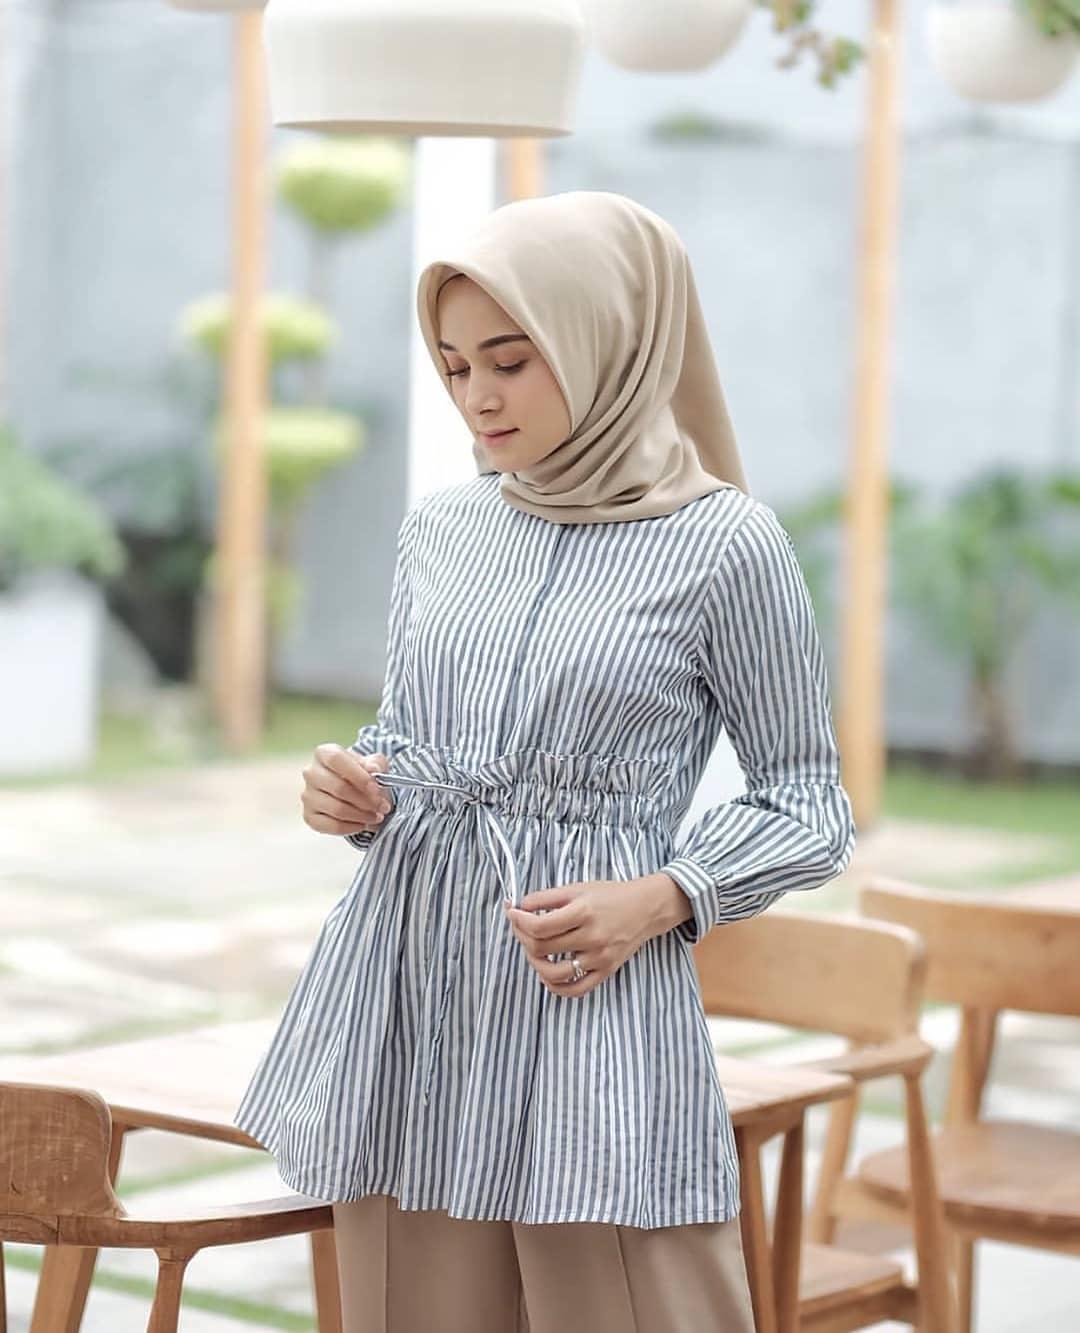 Baju Muslim Modern ERAFA TOP BLOUSE Bahan KATUN SALUR Atasan Wanita Blouse Wanita Terbaru 2020 Modern Blus Wanita Kekinian Blouse Wanita Polos Blouse Jumbo